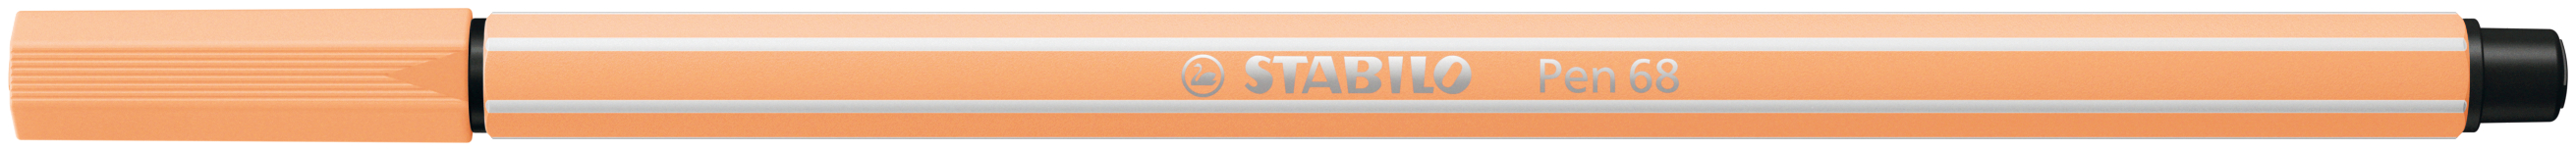 STABILO Stylo Fibre Pen 68 1-0mm 68/25 orange claire